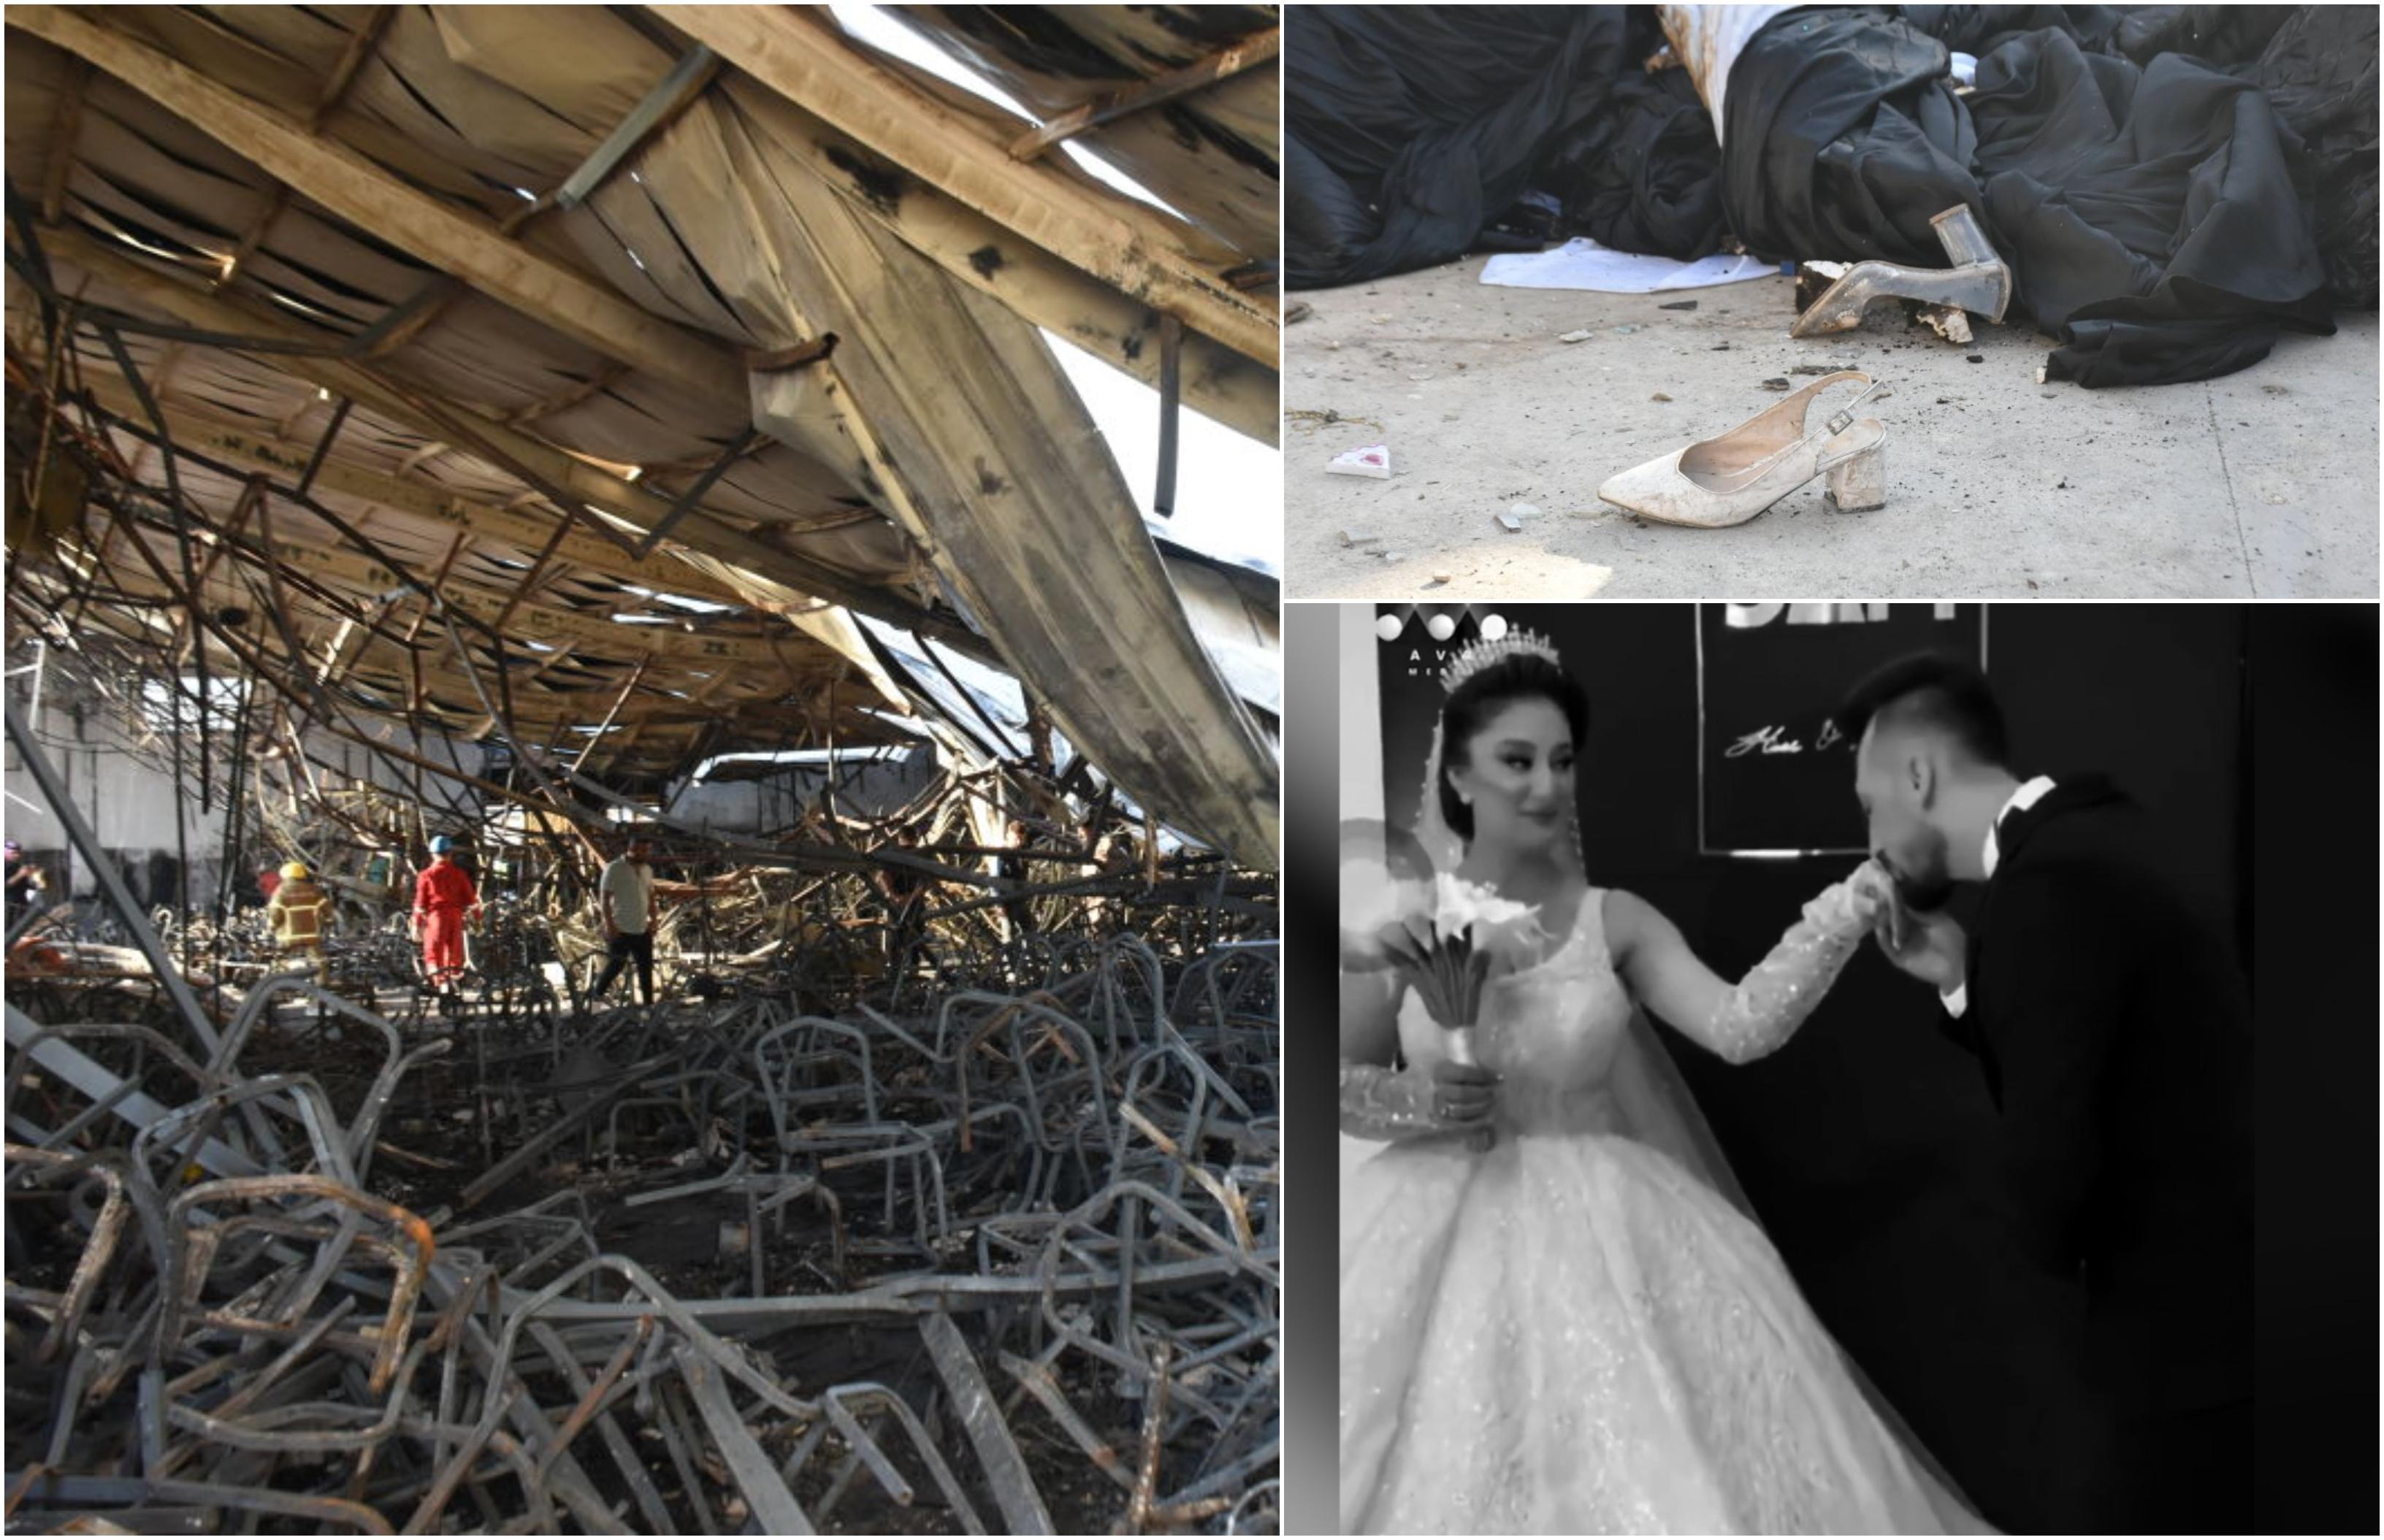 Răsturnare de situaţie în cazul mirilor care ar fi murit arşi de vii la nuntă. Au scăpat miraculos cu viaţă din flăcările iadului dezlănţuit în Irak